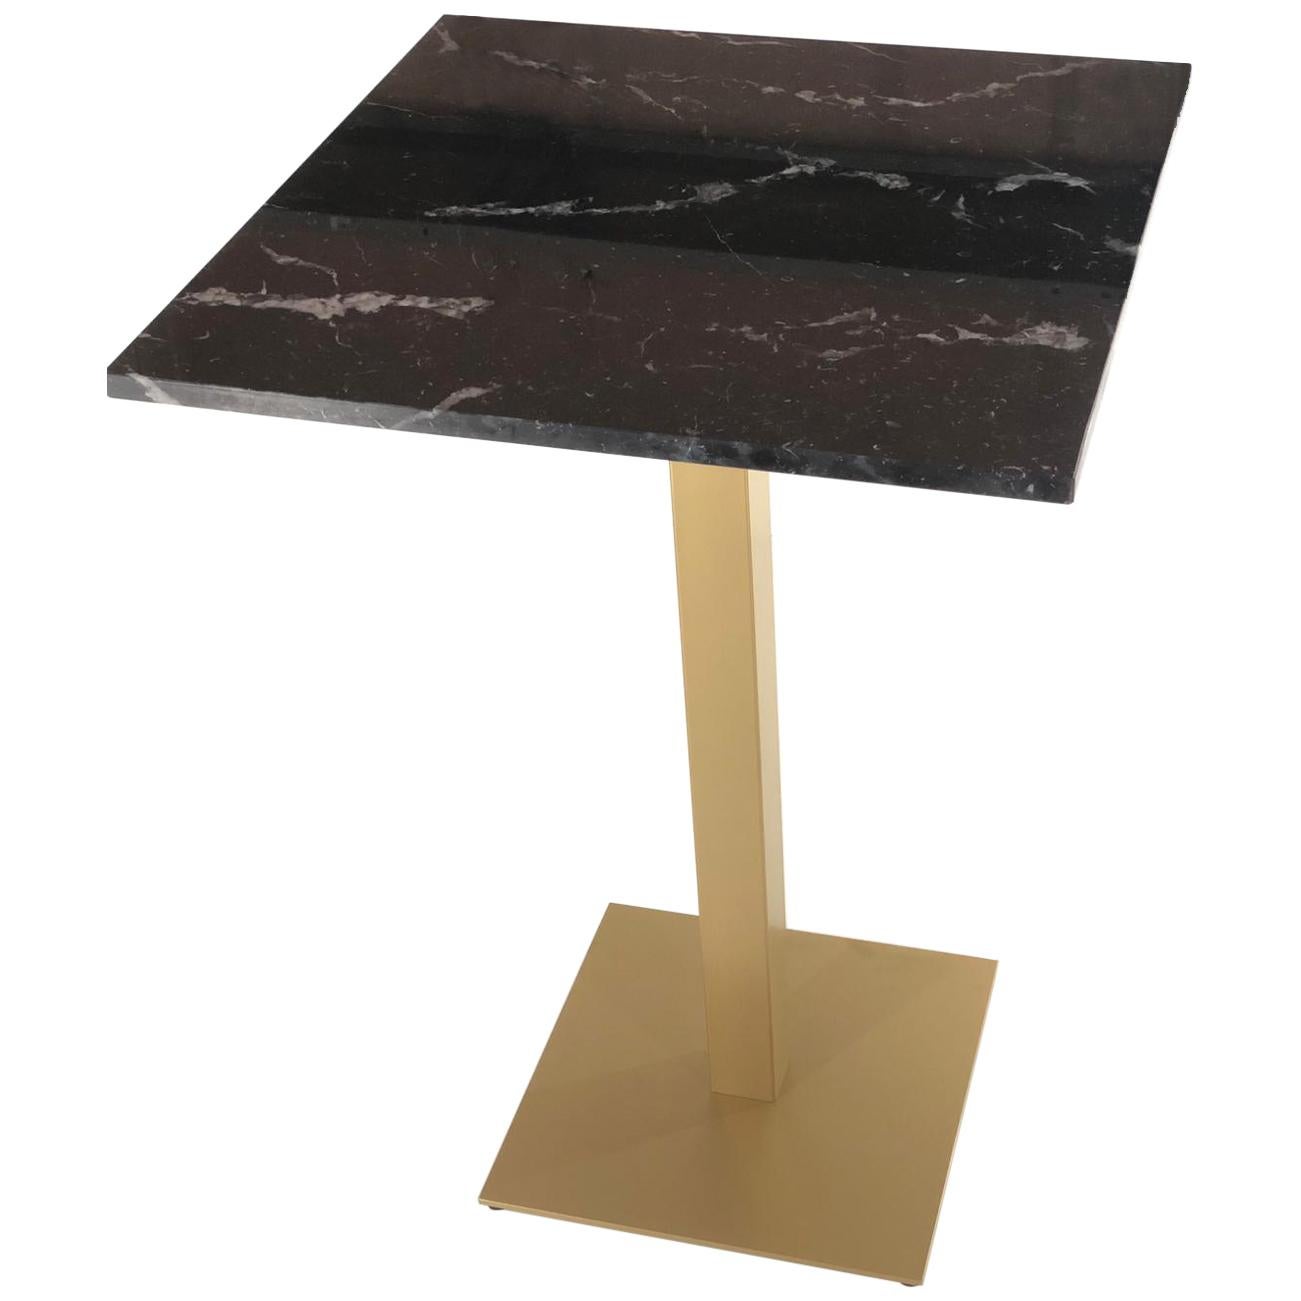 Neuer Bistro-Hoher Tisch aus vergoldetem Schmiedeeisen mit schwarzer Marmorplatte. Indoor & Outdoor